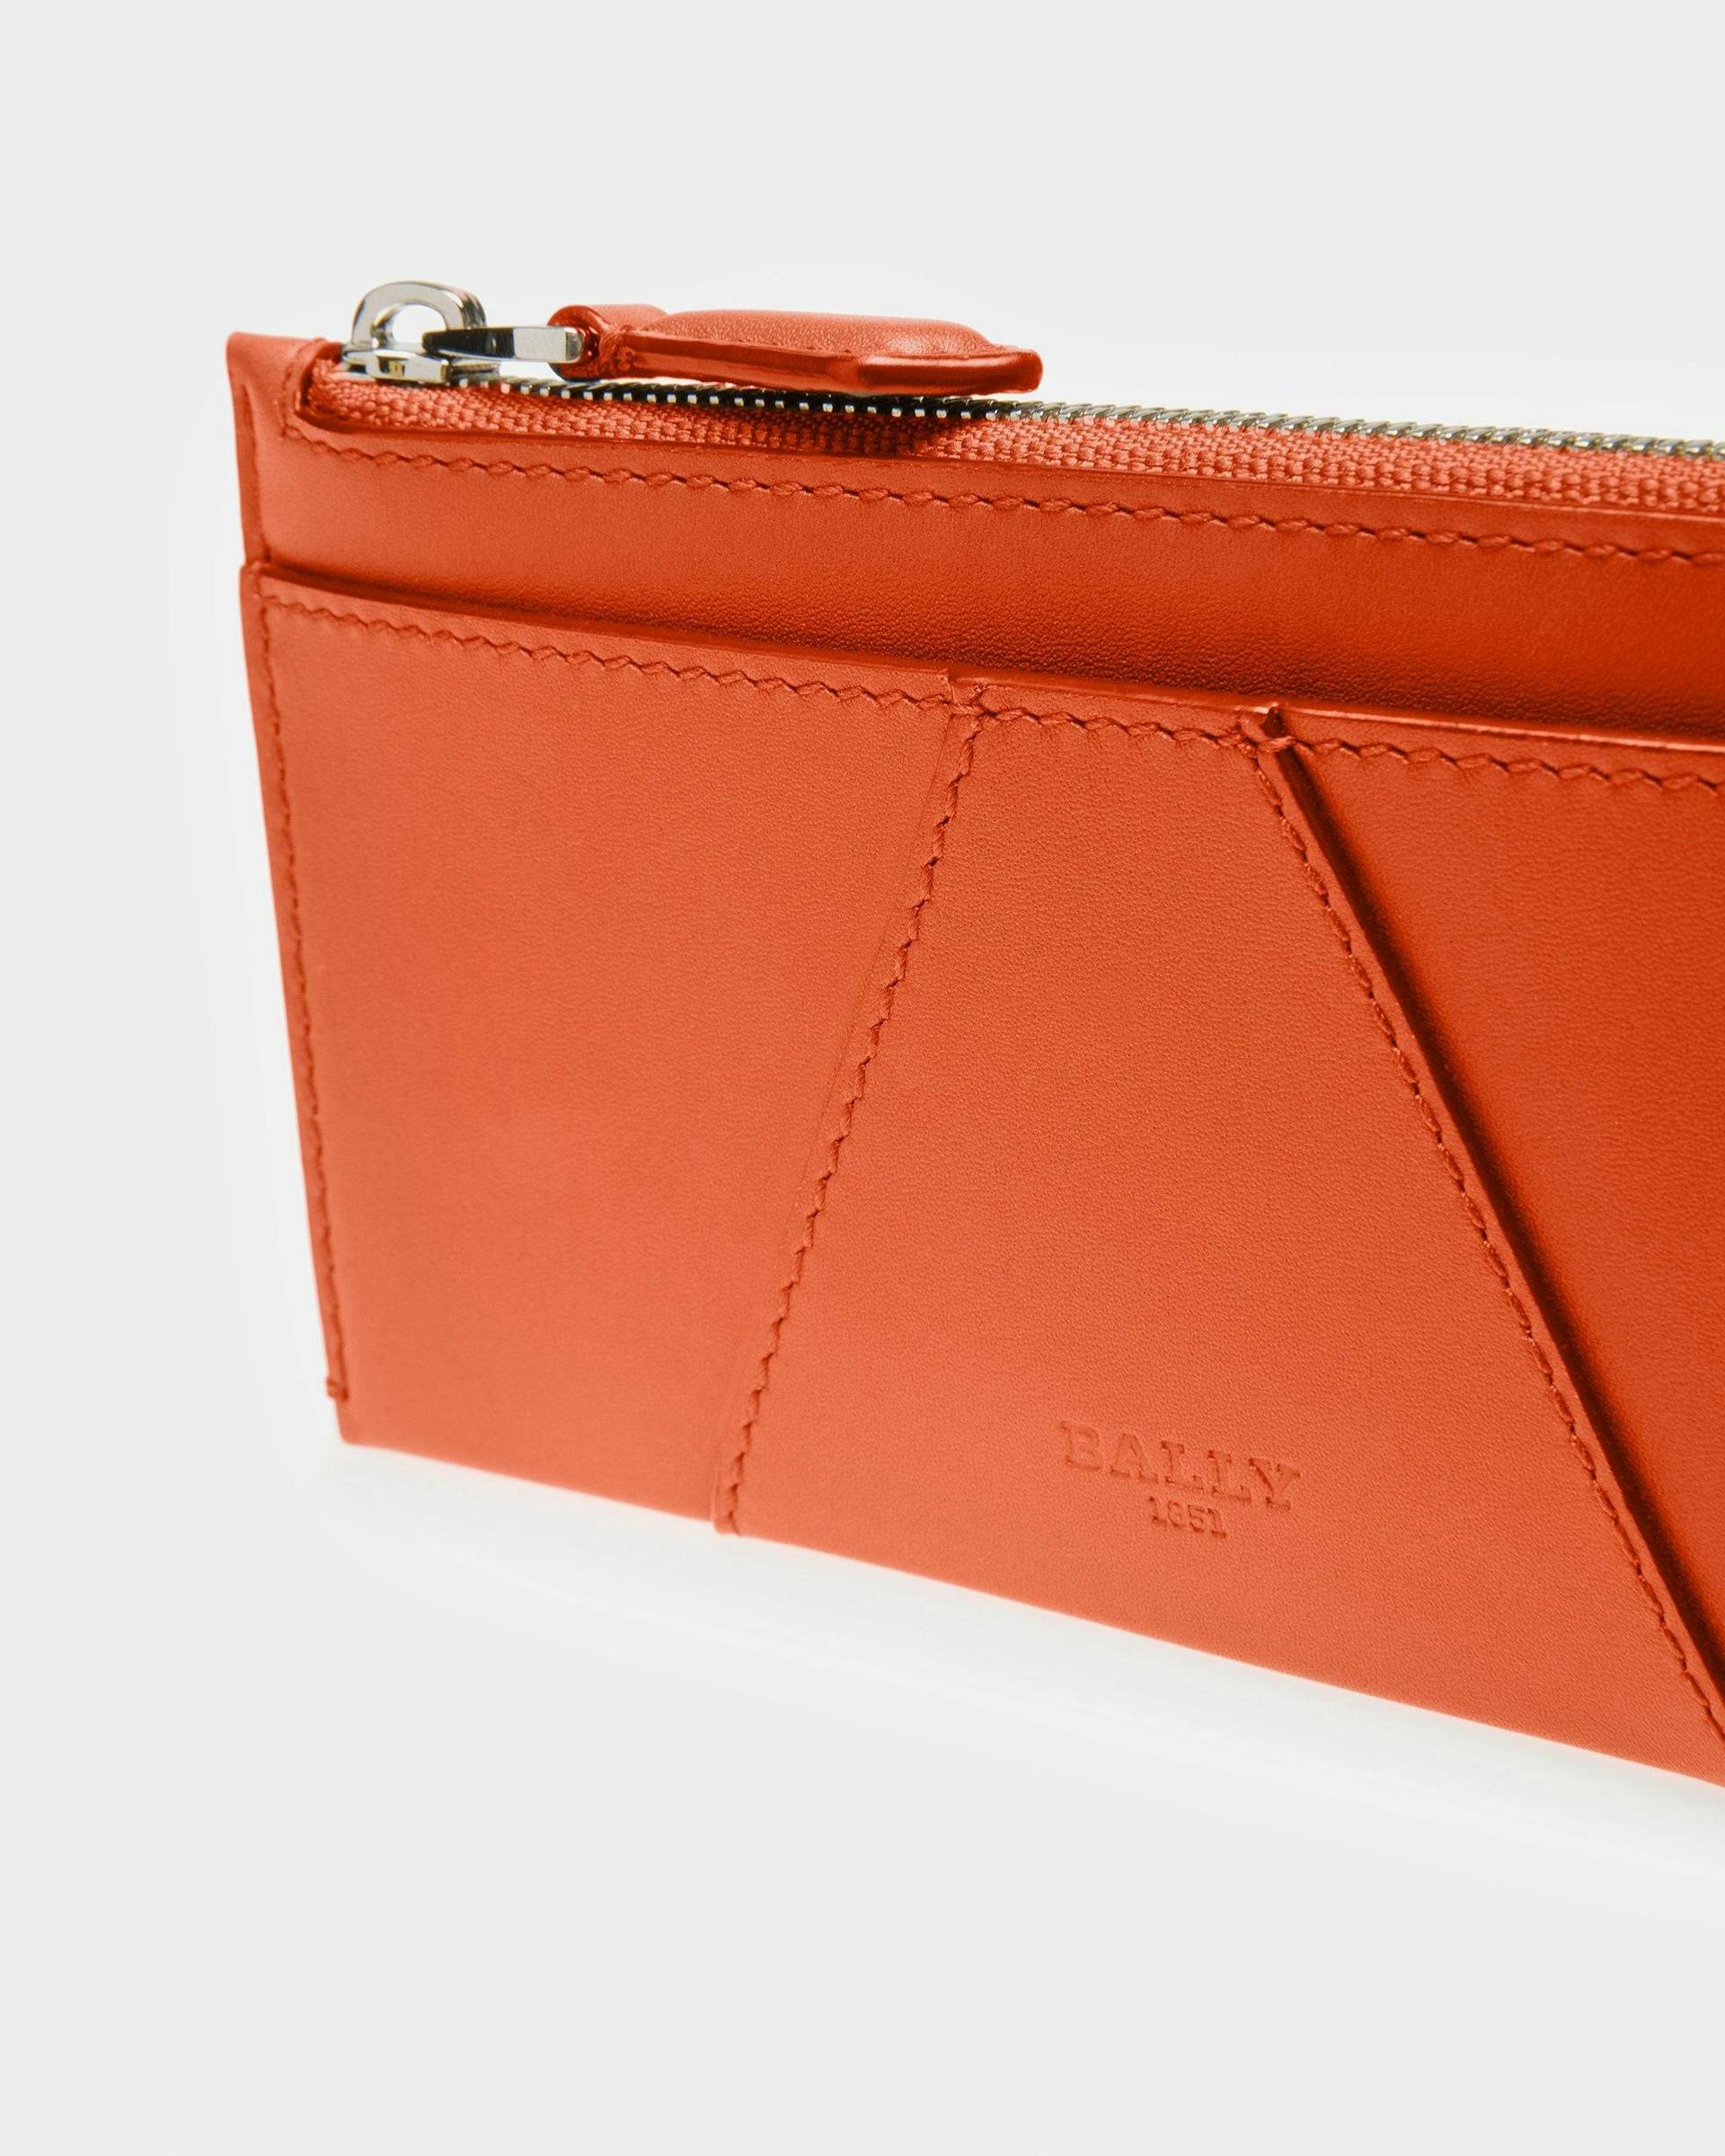 Adley Leather Wallet In Orange - Women's - Bally - 04